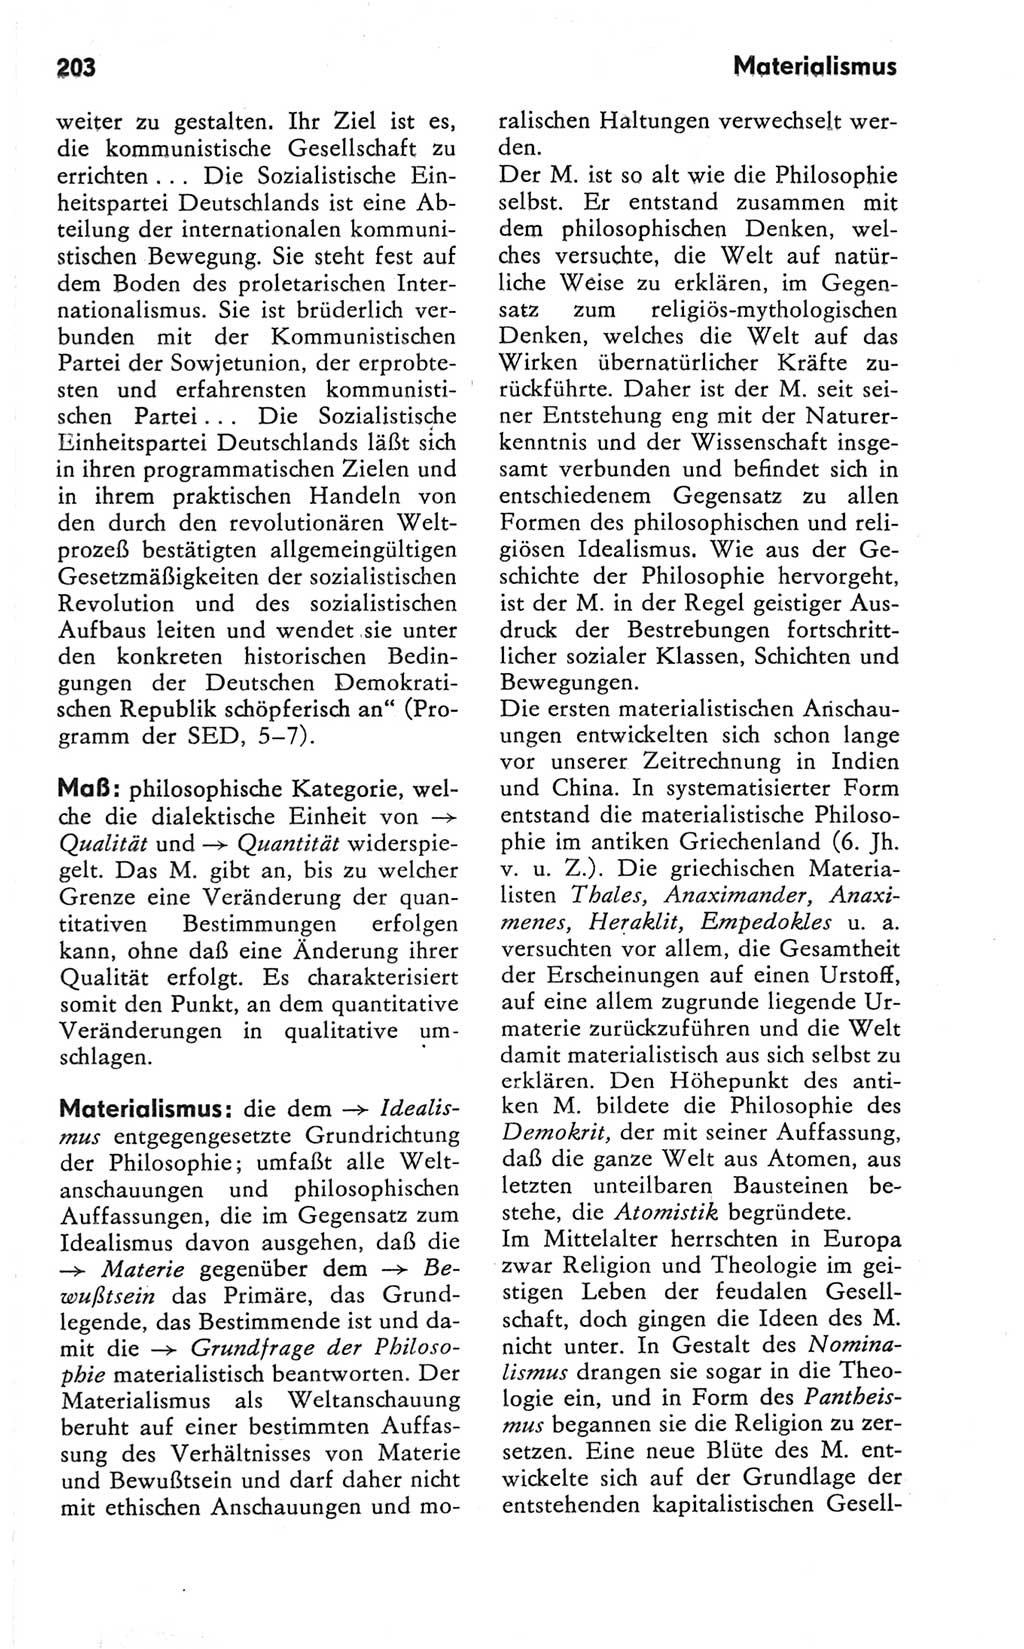 Kleines Wörterbuch der marxistisch-leninistischen Philosophie [Deutsche Demokratische Republik (DDR)] 1981, Seite 203 (Kl. Wb. ML Phil. DDR 1981, S. 203)